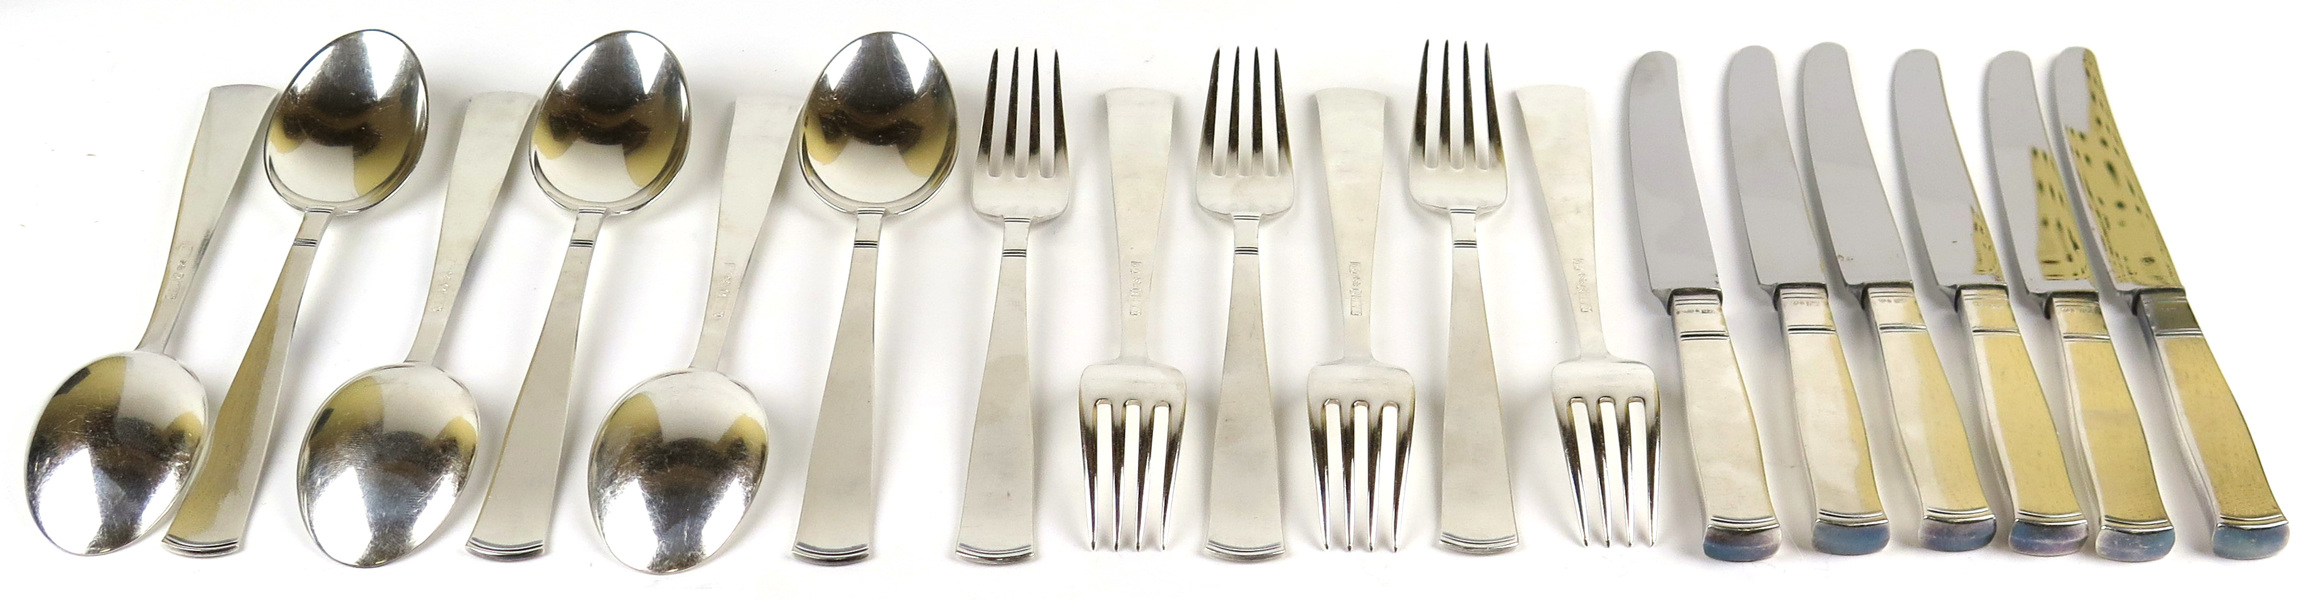 Bordsknivar, -skedar och -gafflar, 6 + 6 + 6 st, silver, Rosenholm, design Jakob Ängman 1933, _5883a_8d8be174ed89e28_lg.jpeg